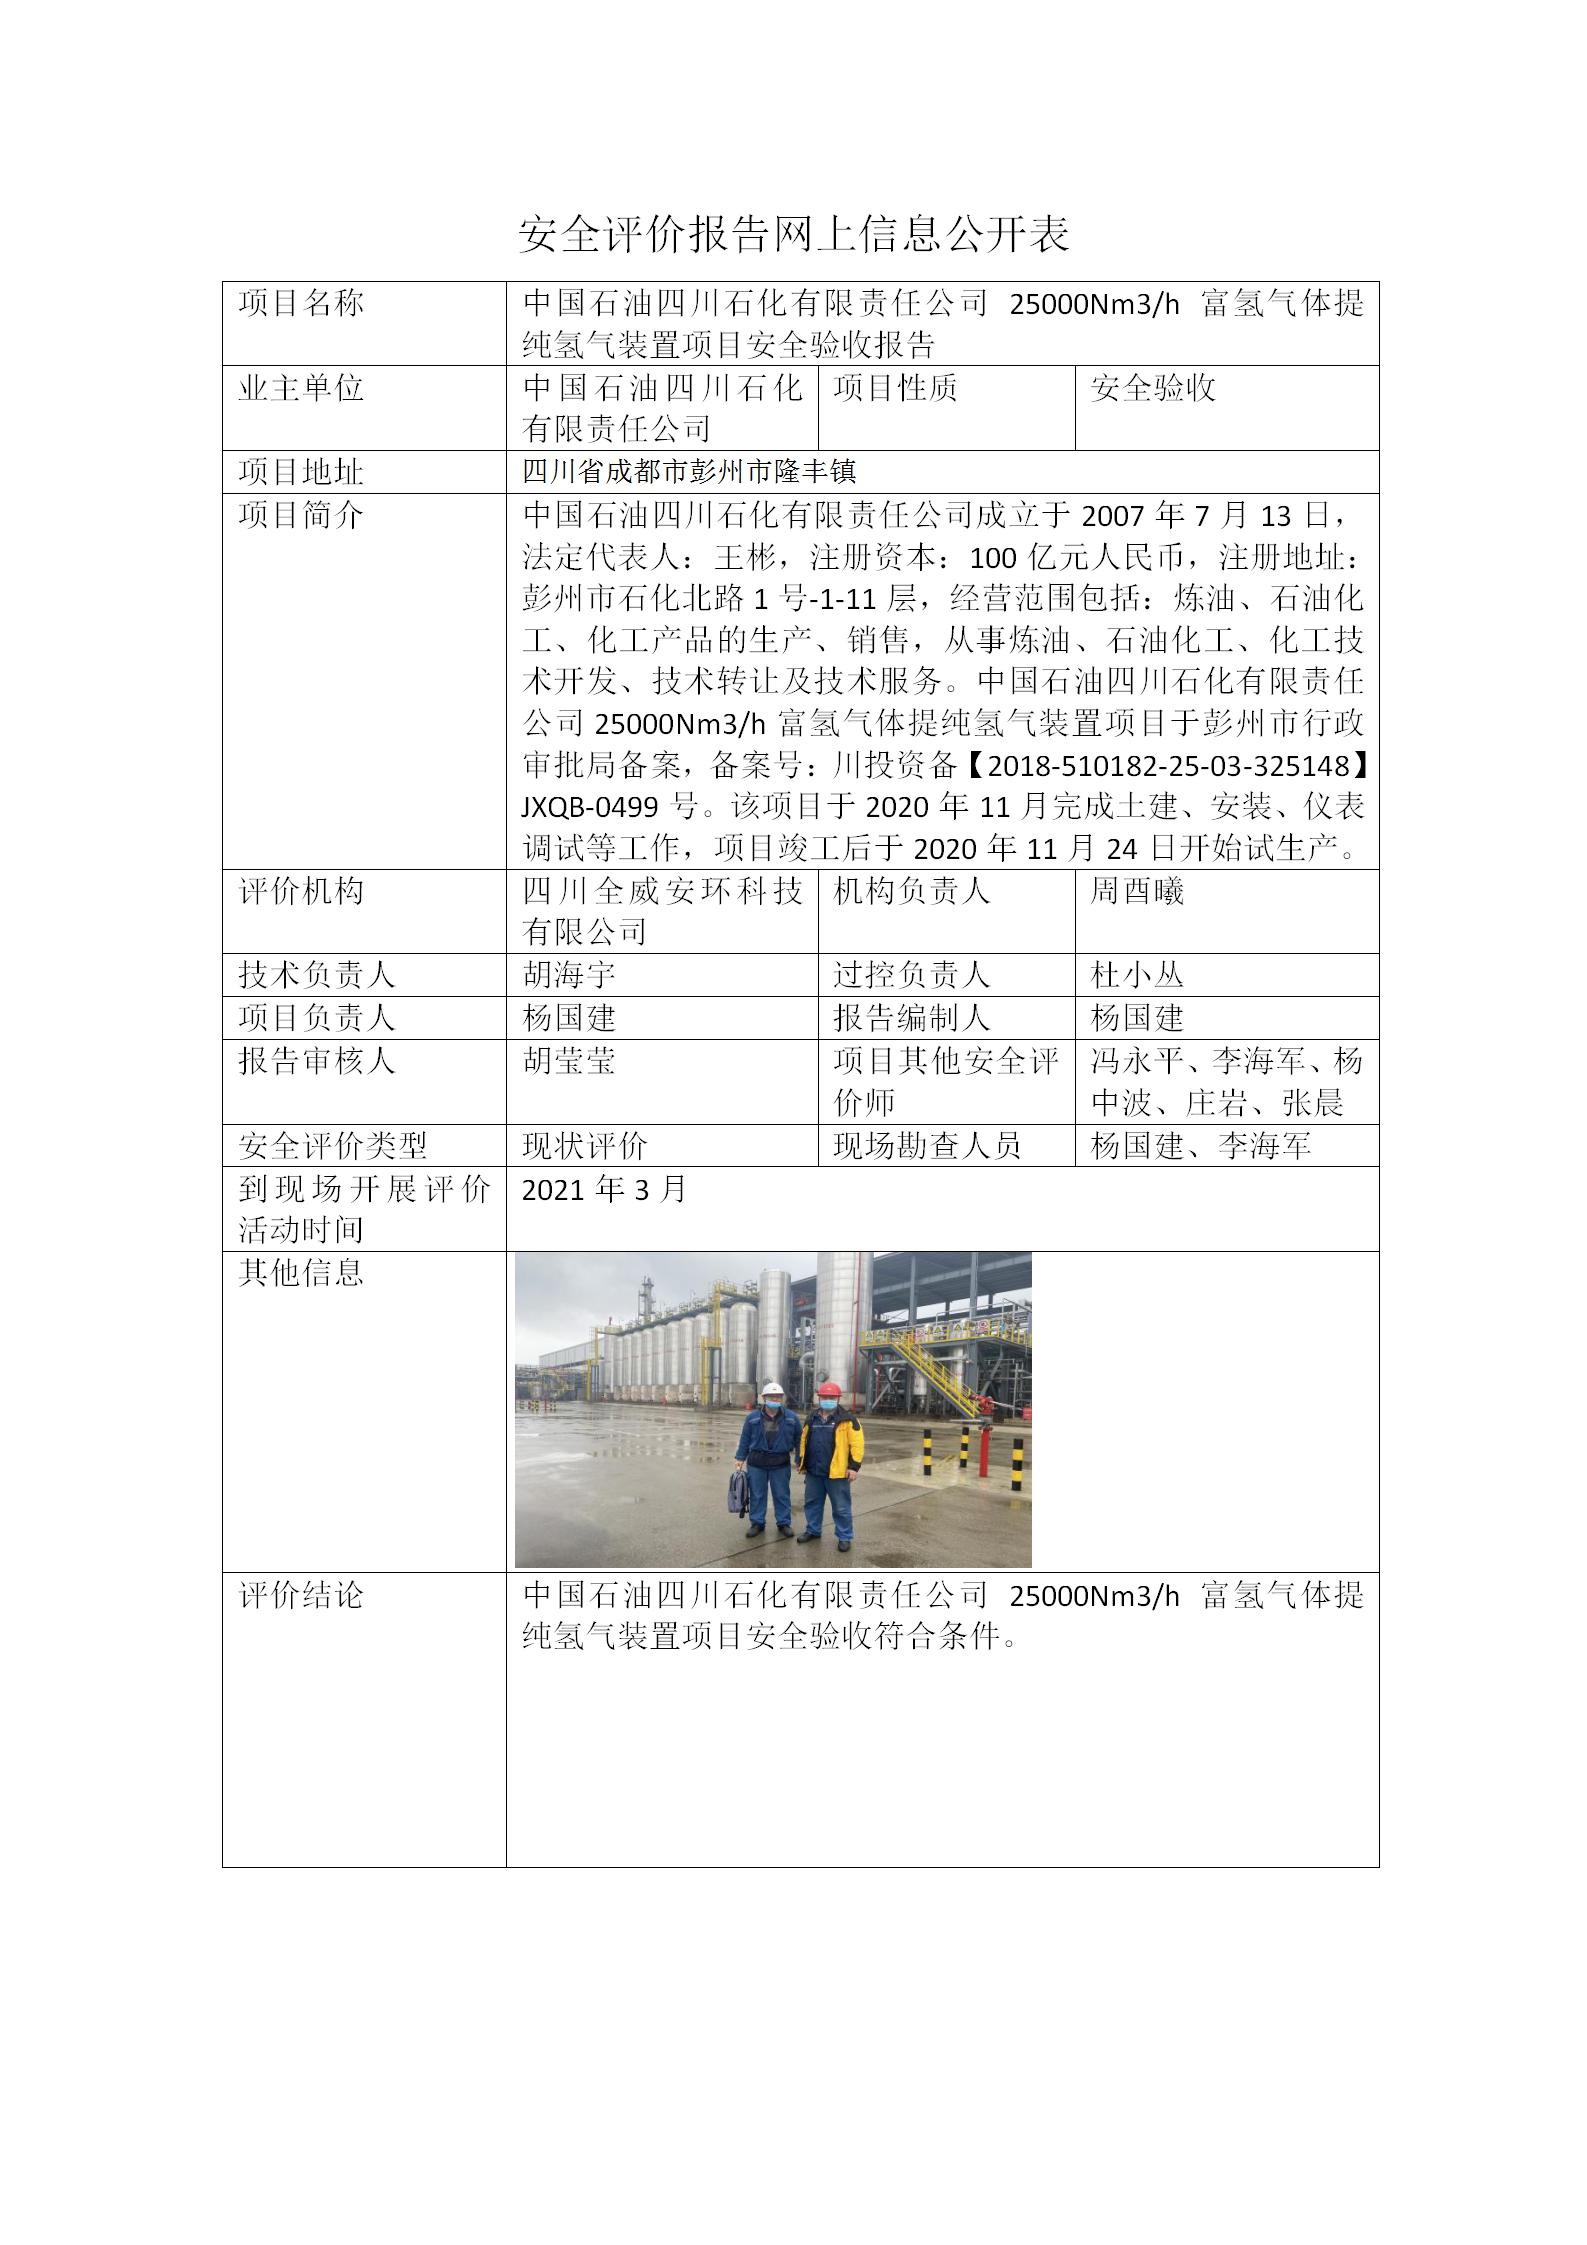 中国石油四川石化有限责任公司富氢气体提纯氢气装置项目安全评价报告网上信息公开表